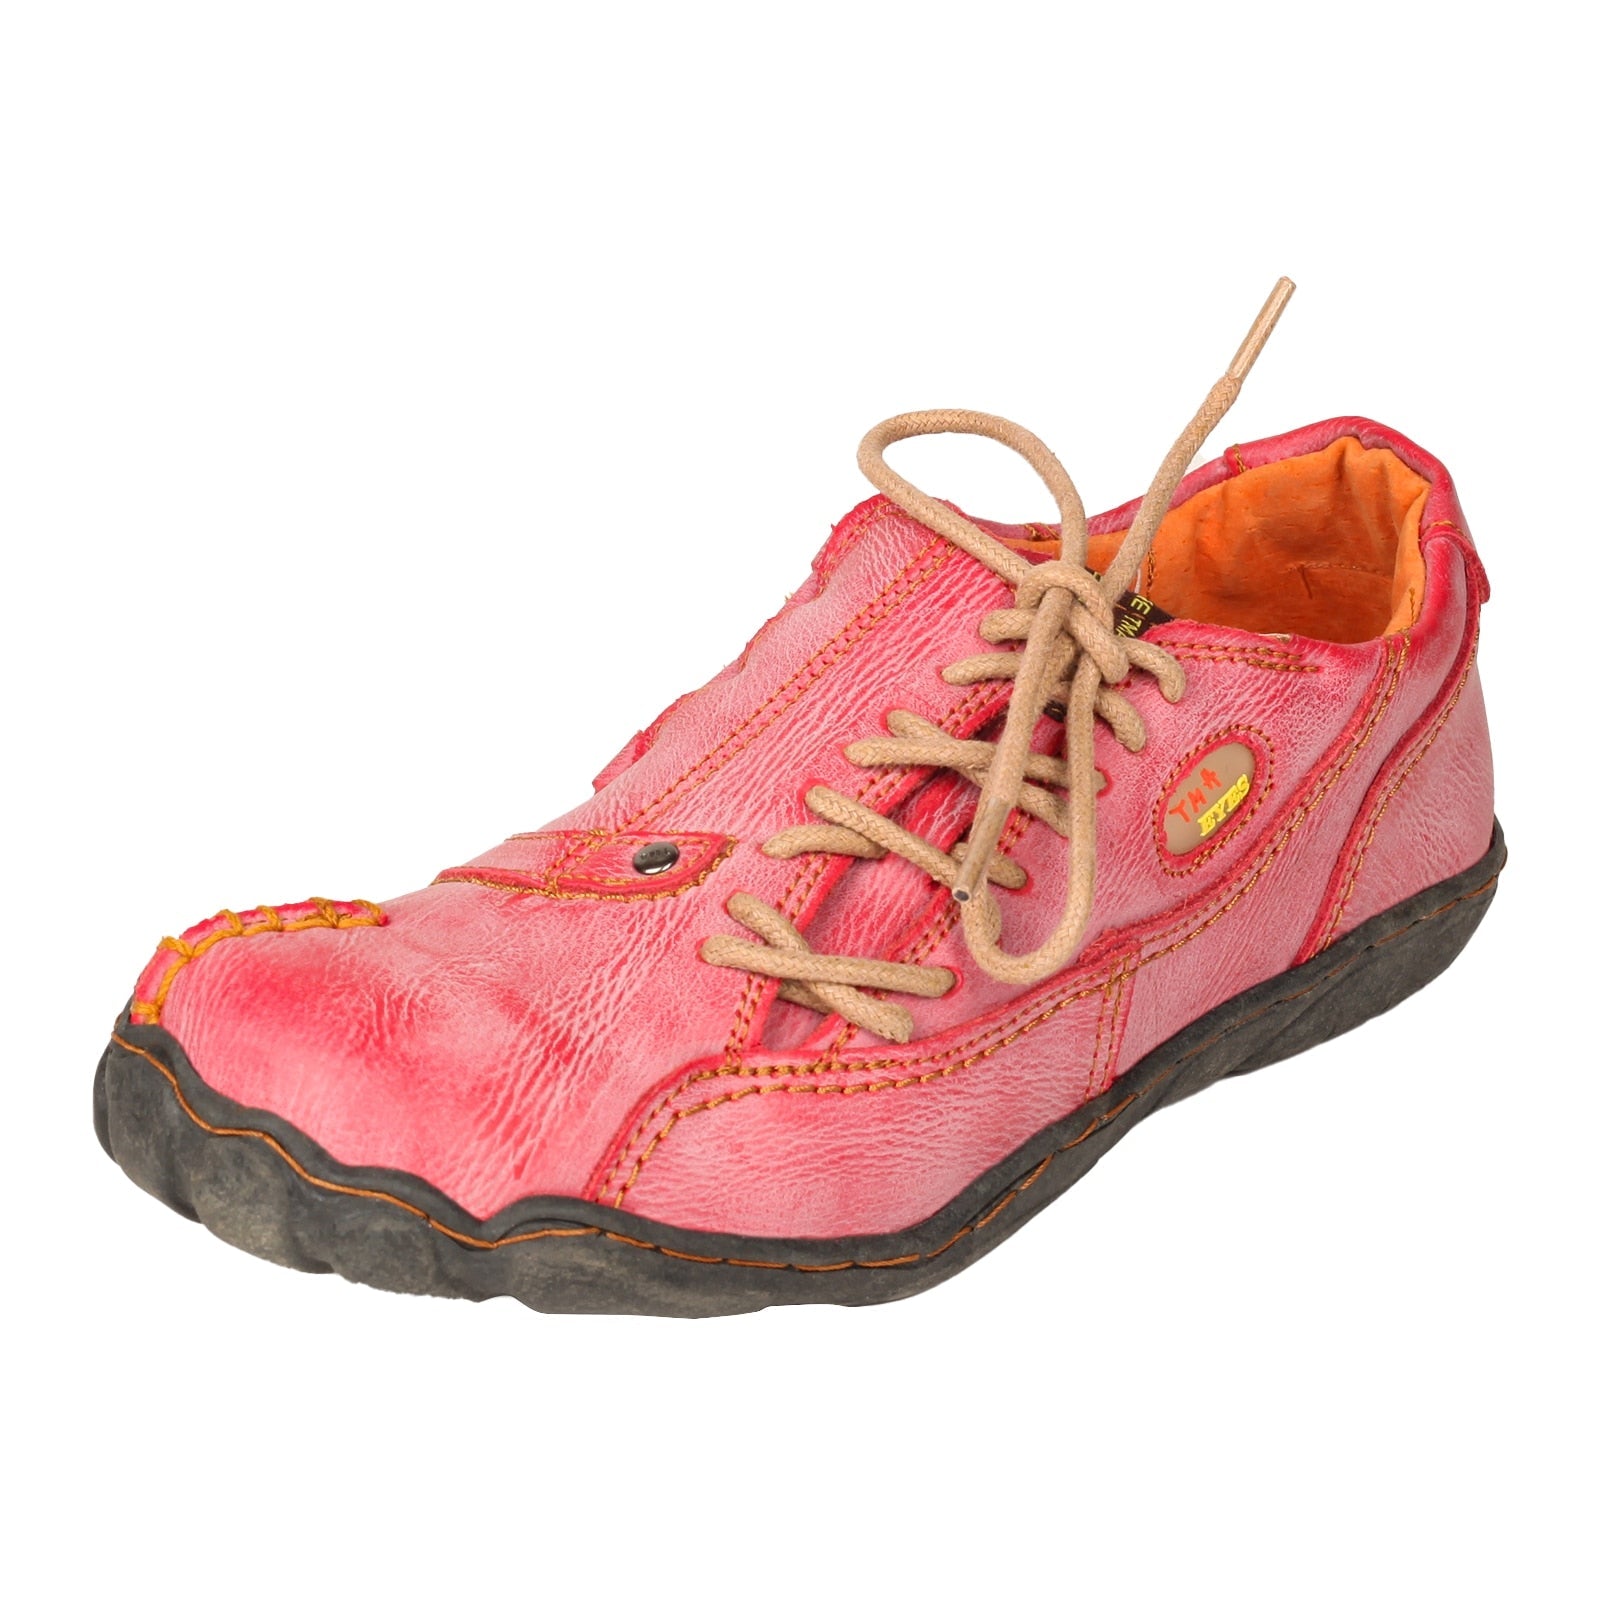 Chaussures orthopédiques en cuir pour femmes - Swiden